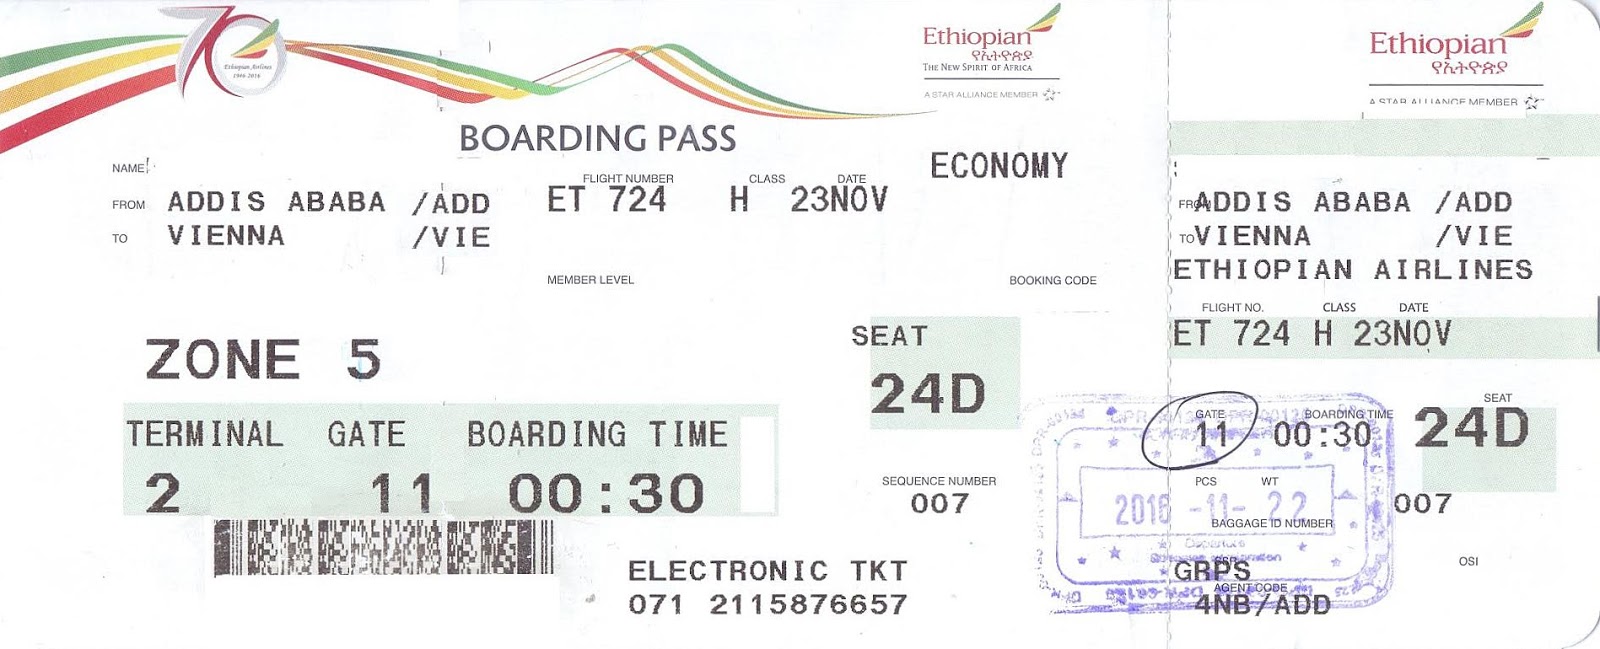 ethiopian airlines travel document